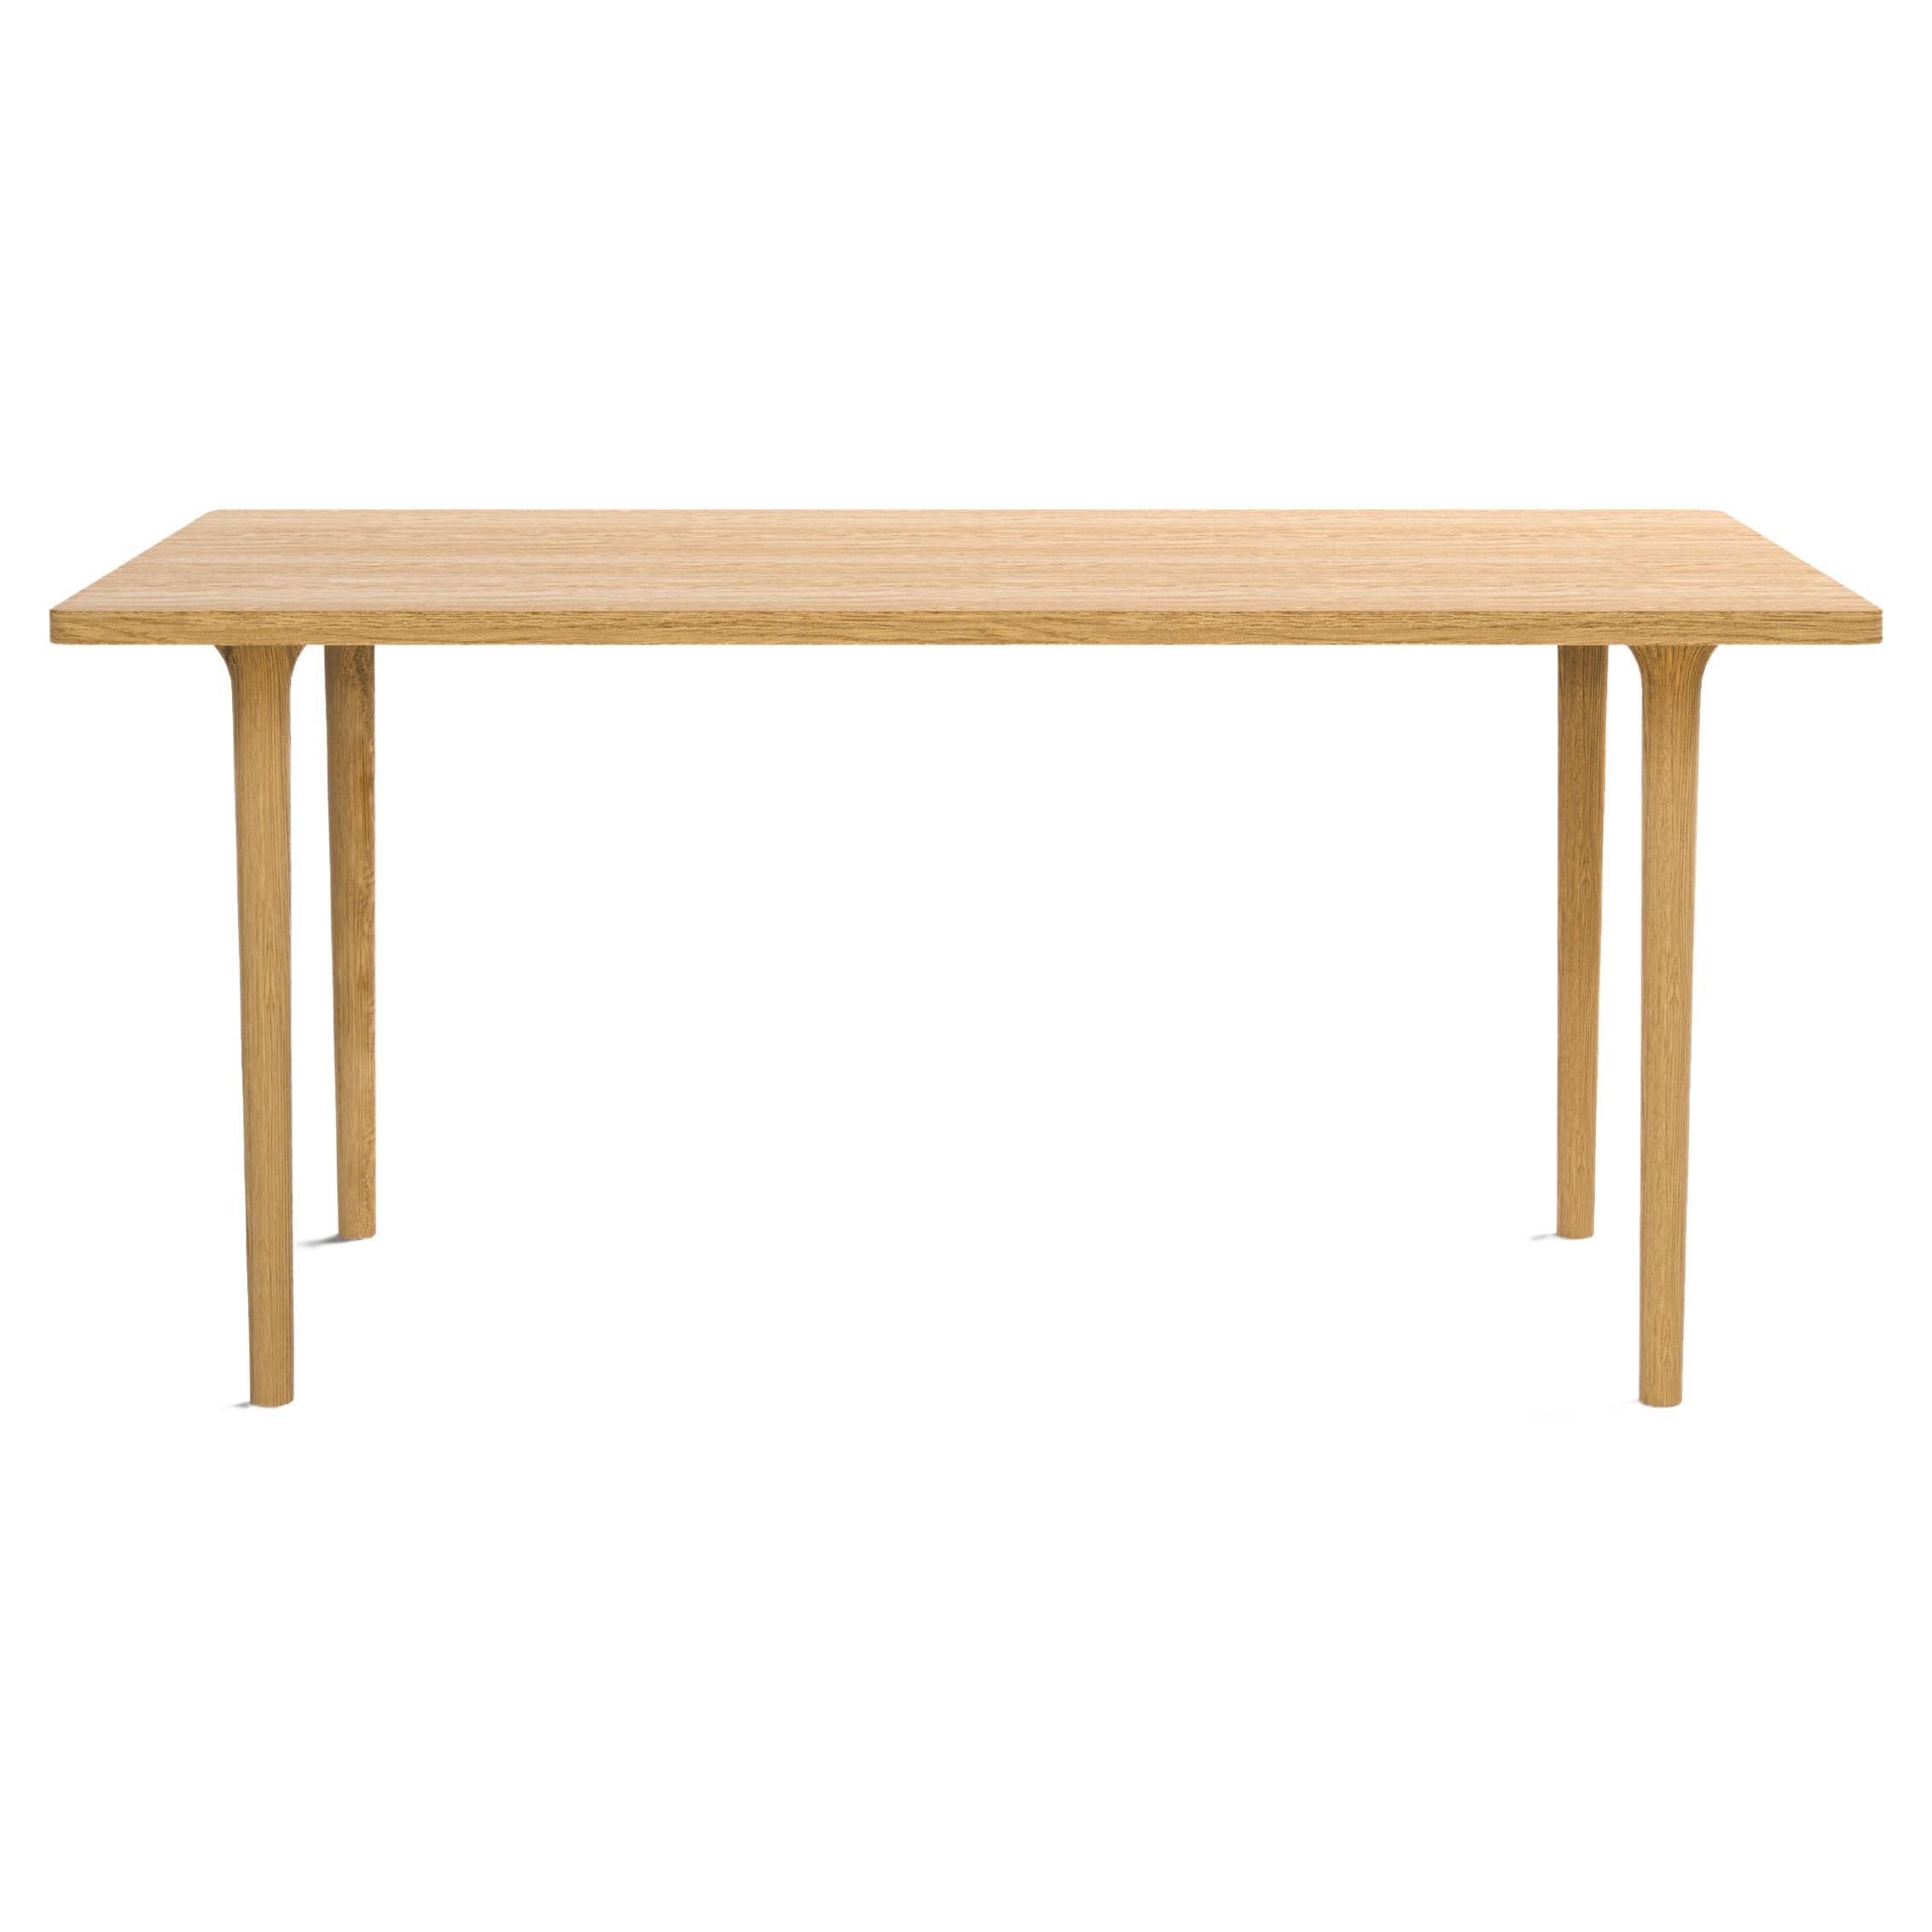 Table moderne minimaliste rectangulaire en bois de chêne 